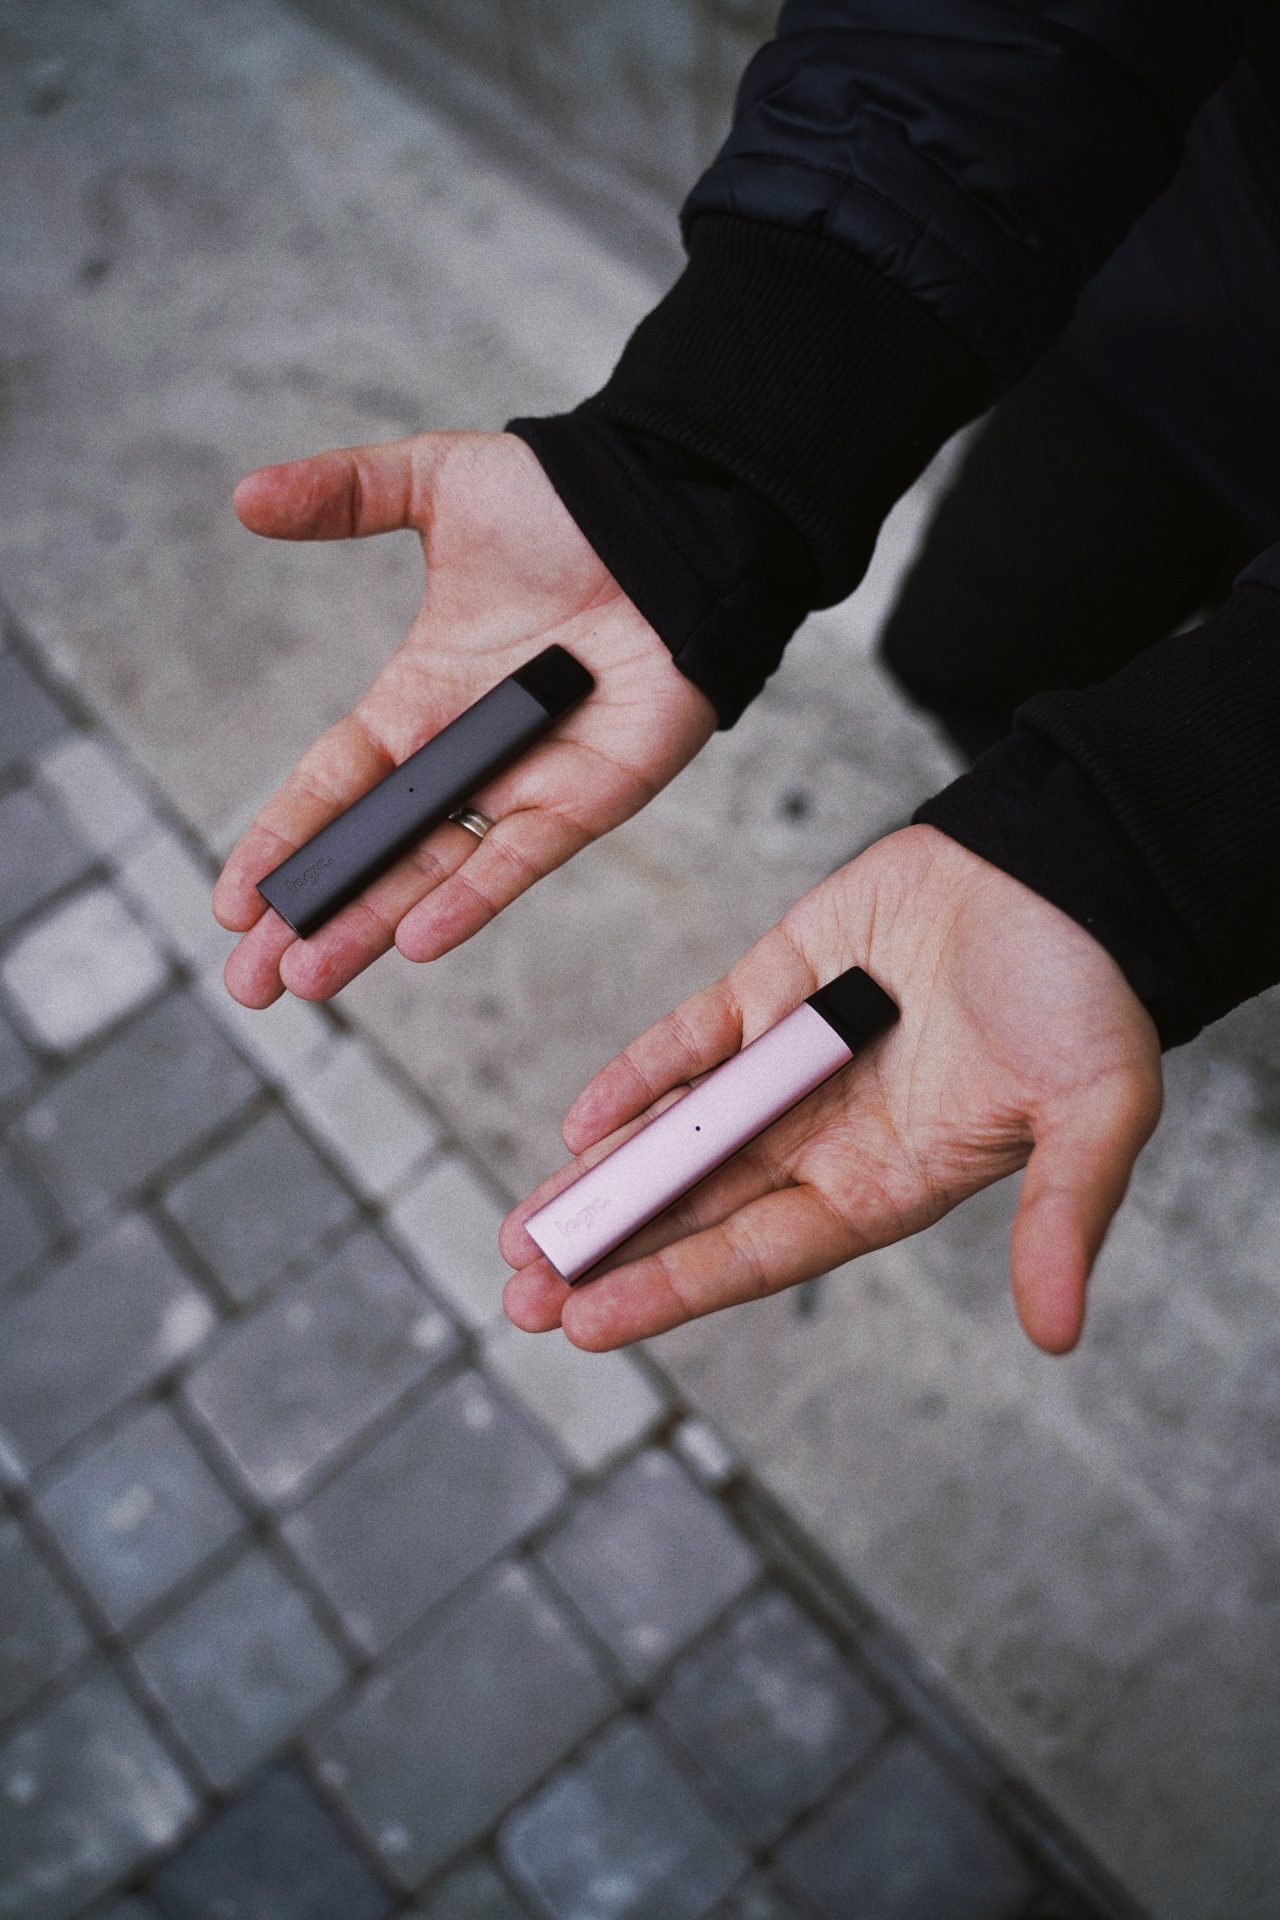 nouveaux produits nicotinés cigarette électronique e-cigarette vape puff vapo vaporisation